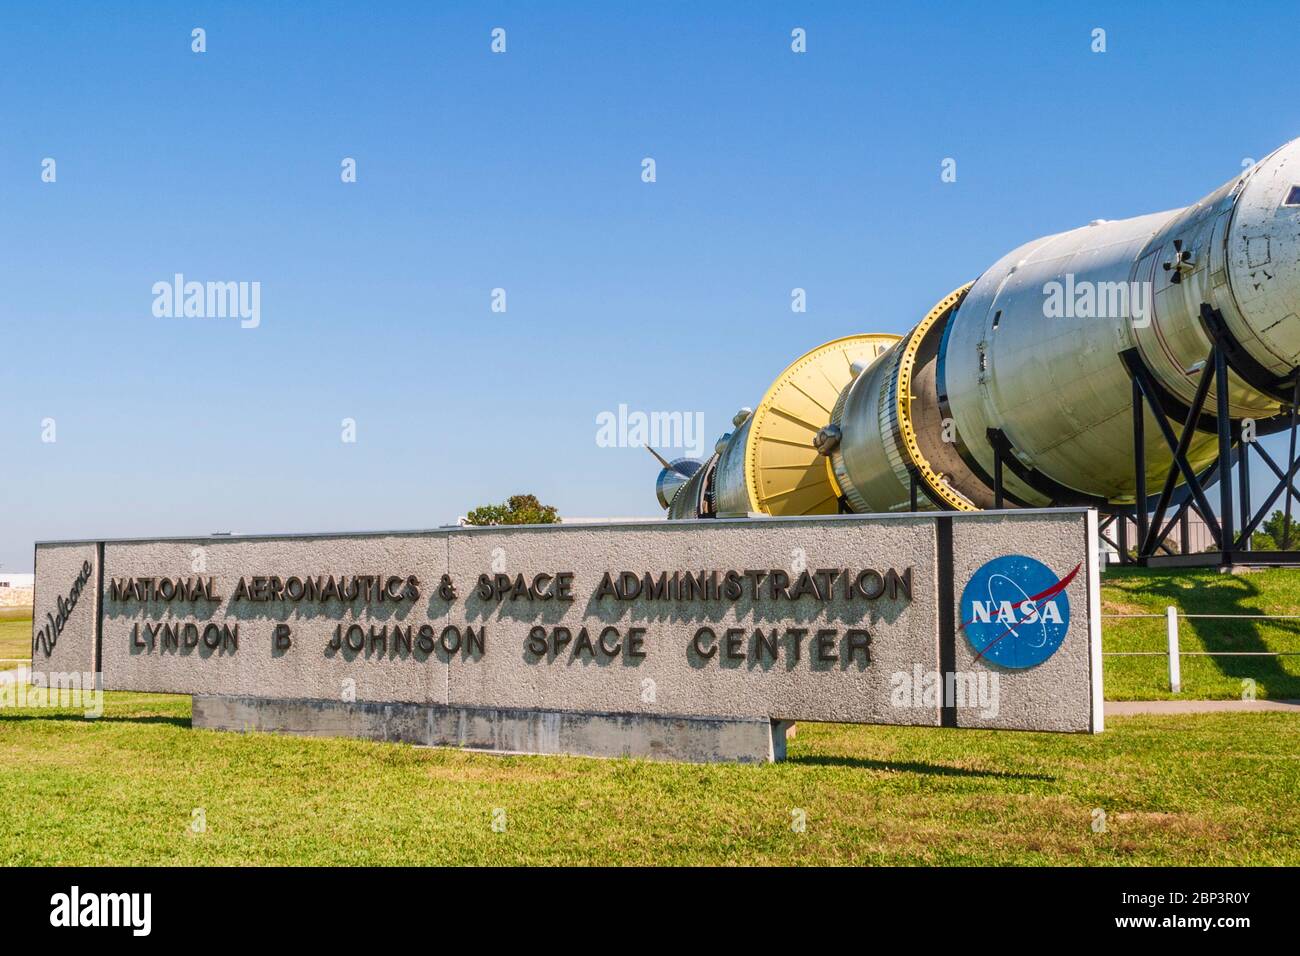 Saturn 5 Rocket au musée et centre spatial de la NASA (National Aeronautics and Space Administration) à Clear Lake, Texas. Banque D'Images